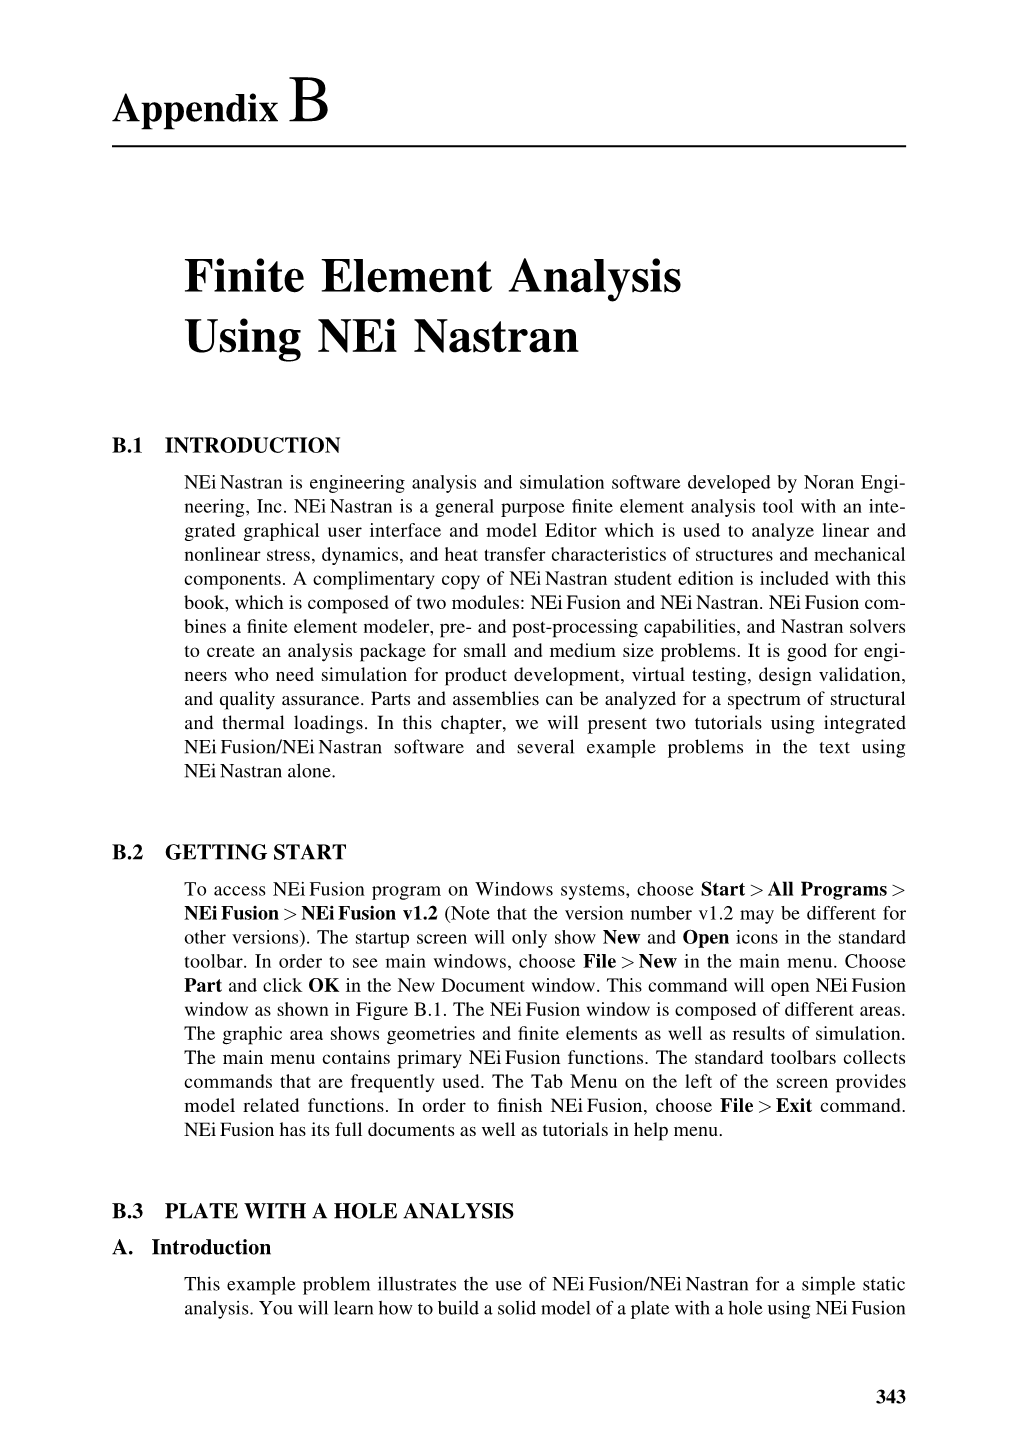 Finite Element Analysis Using Nei Nastran